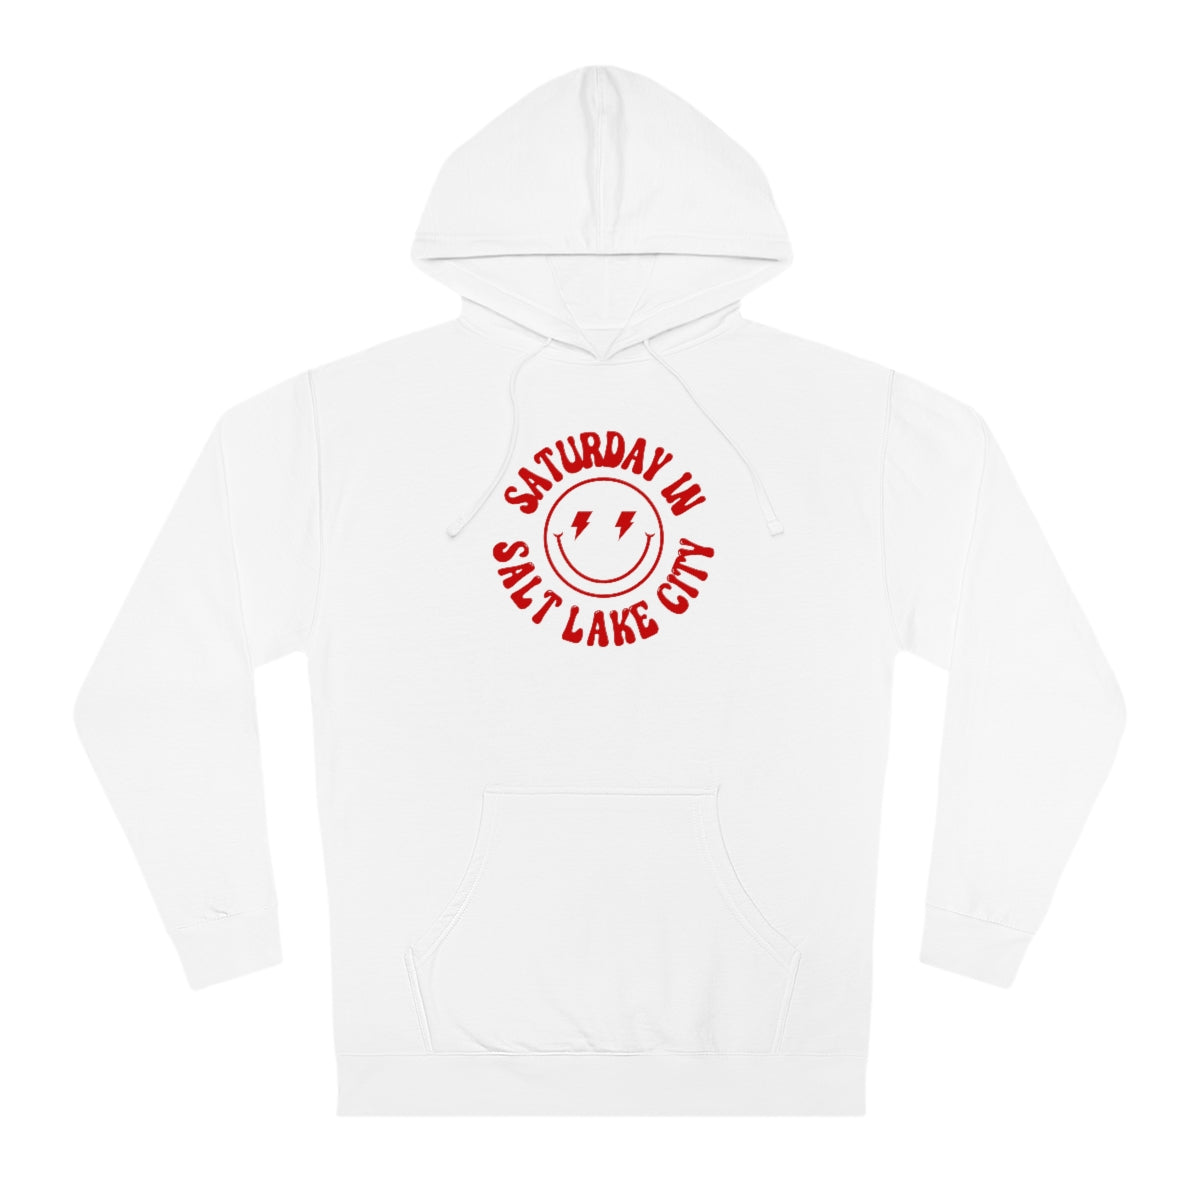 Smiley SLC Hooded Sweatshirt - GG - ITC